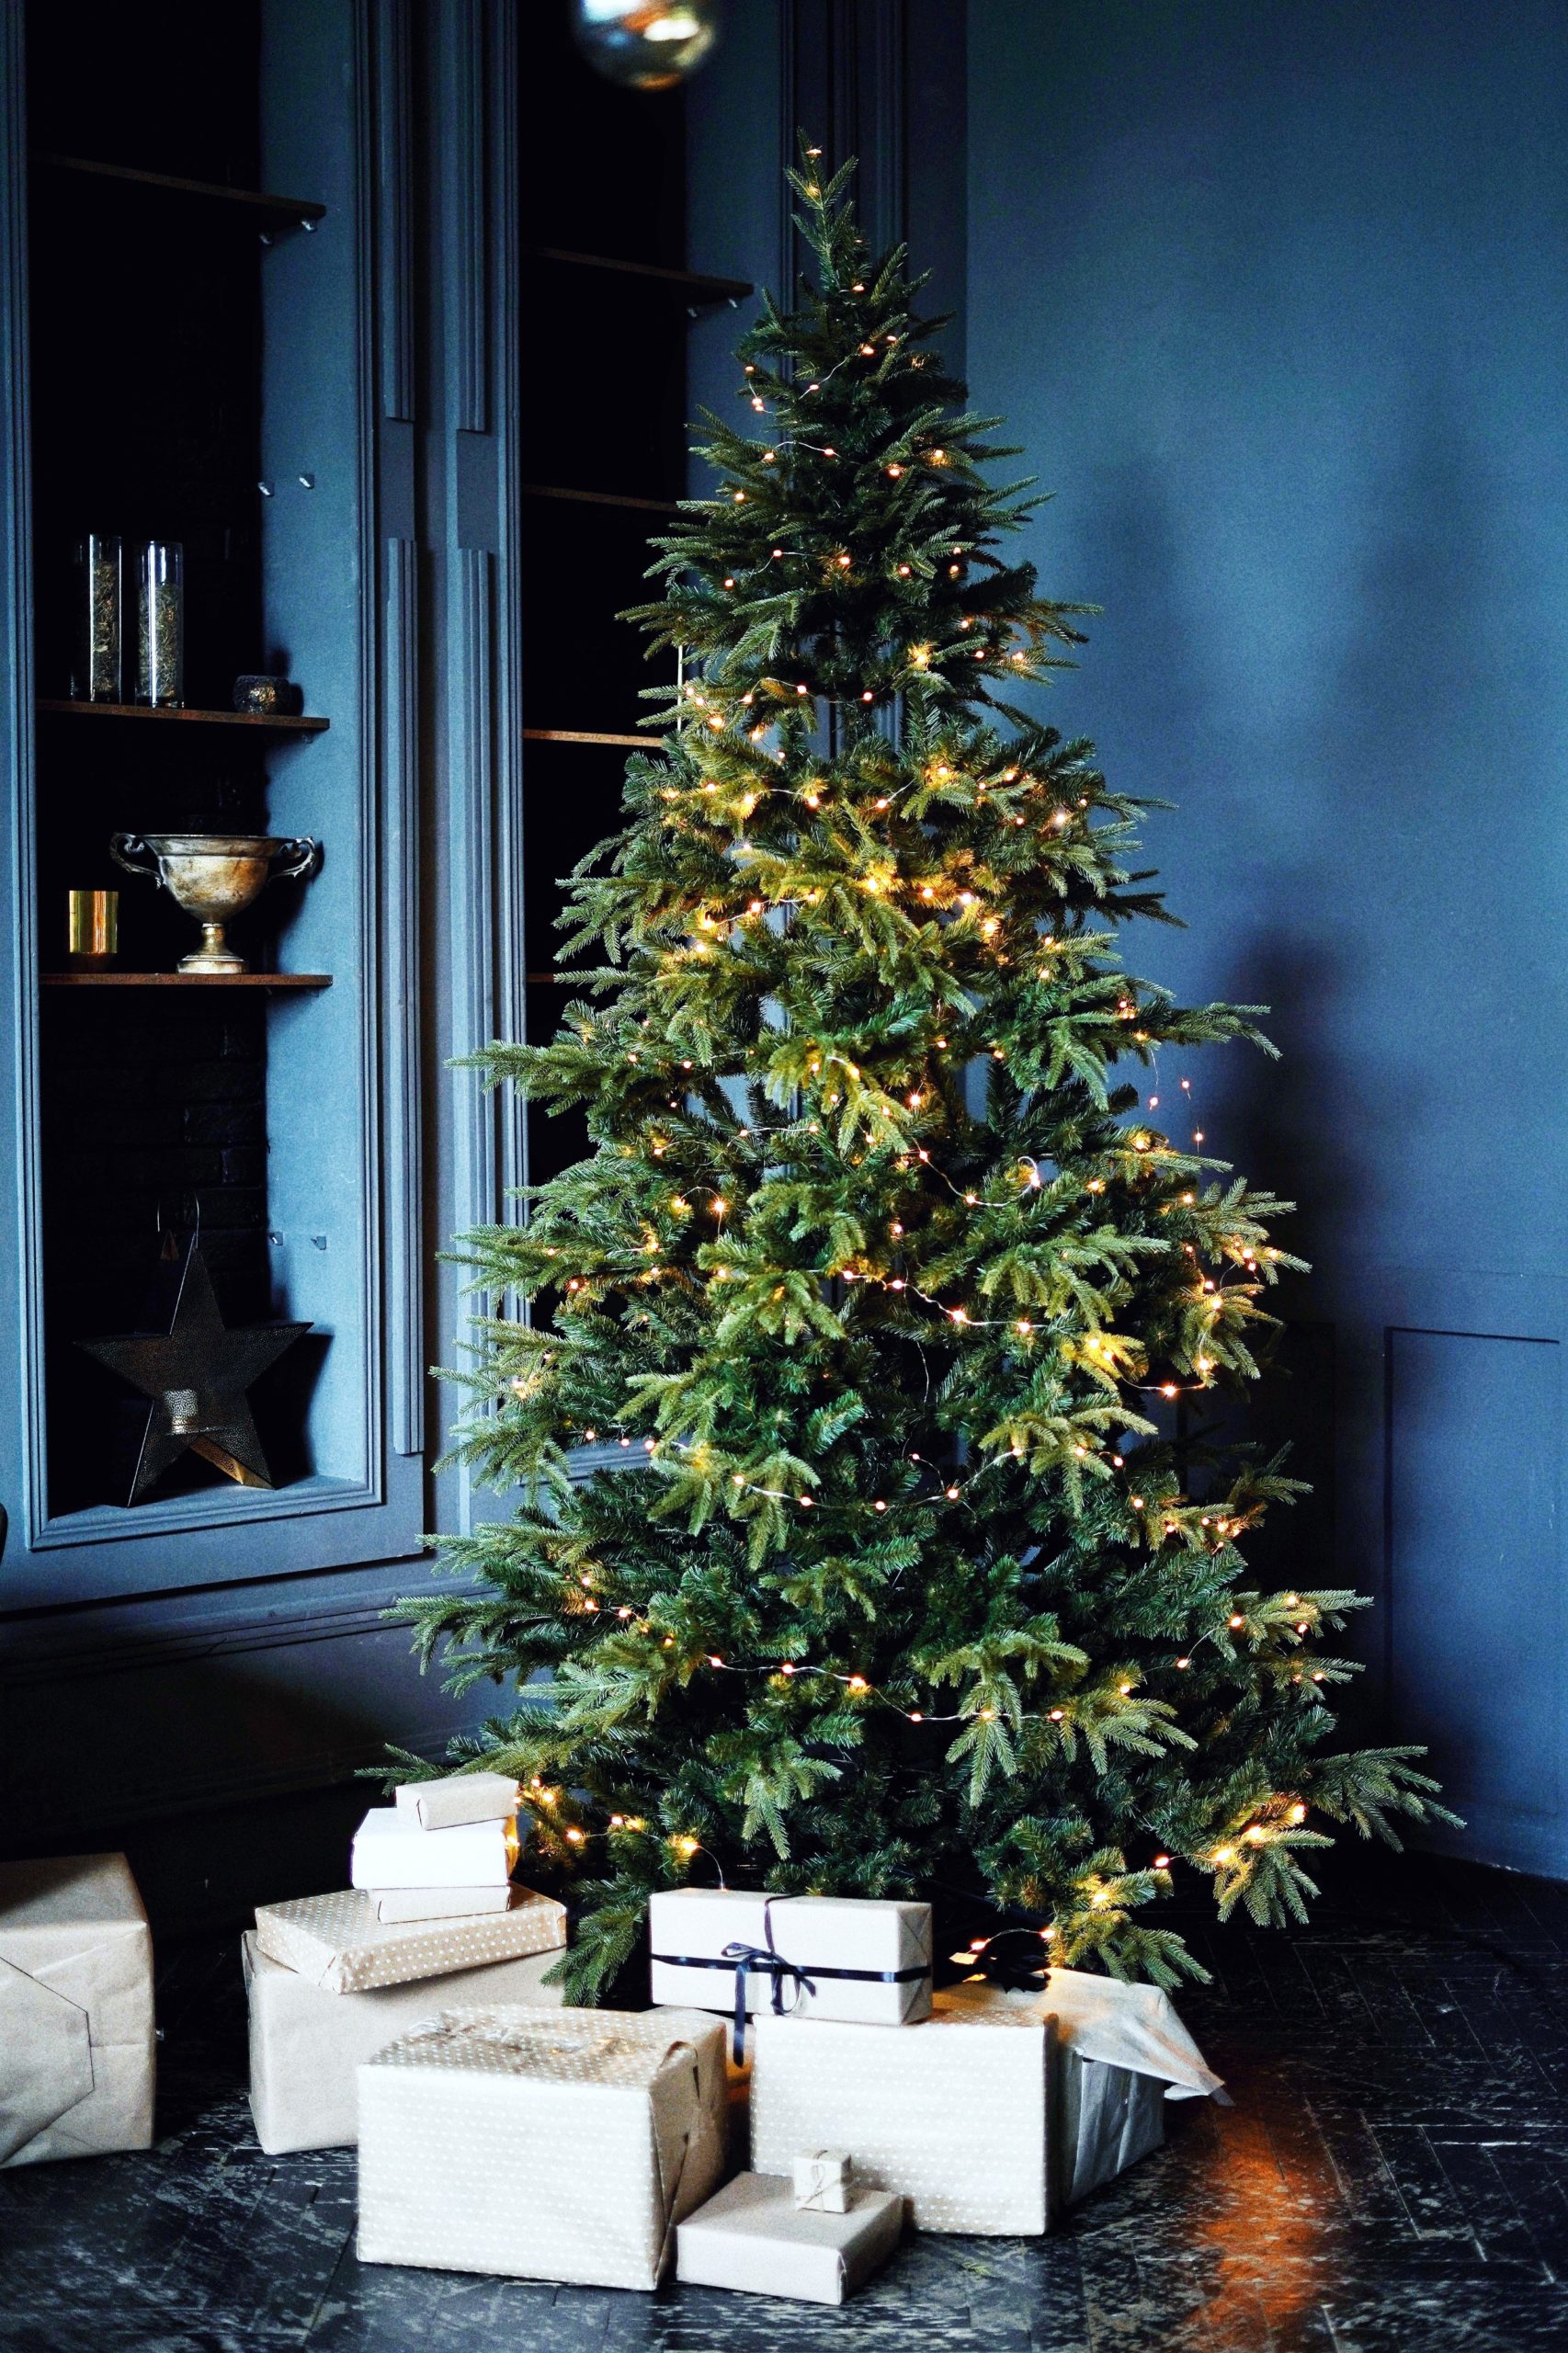 <img src="christmas.jpg" alt="christmas tree with presents"/> 